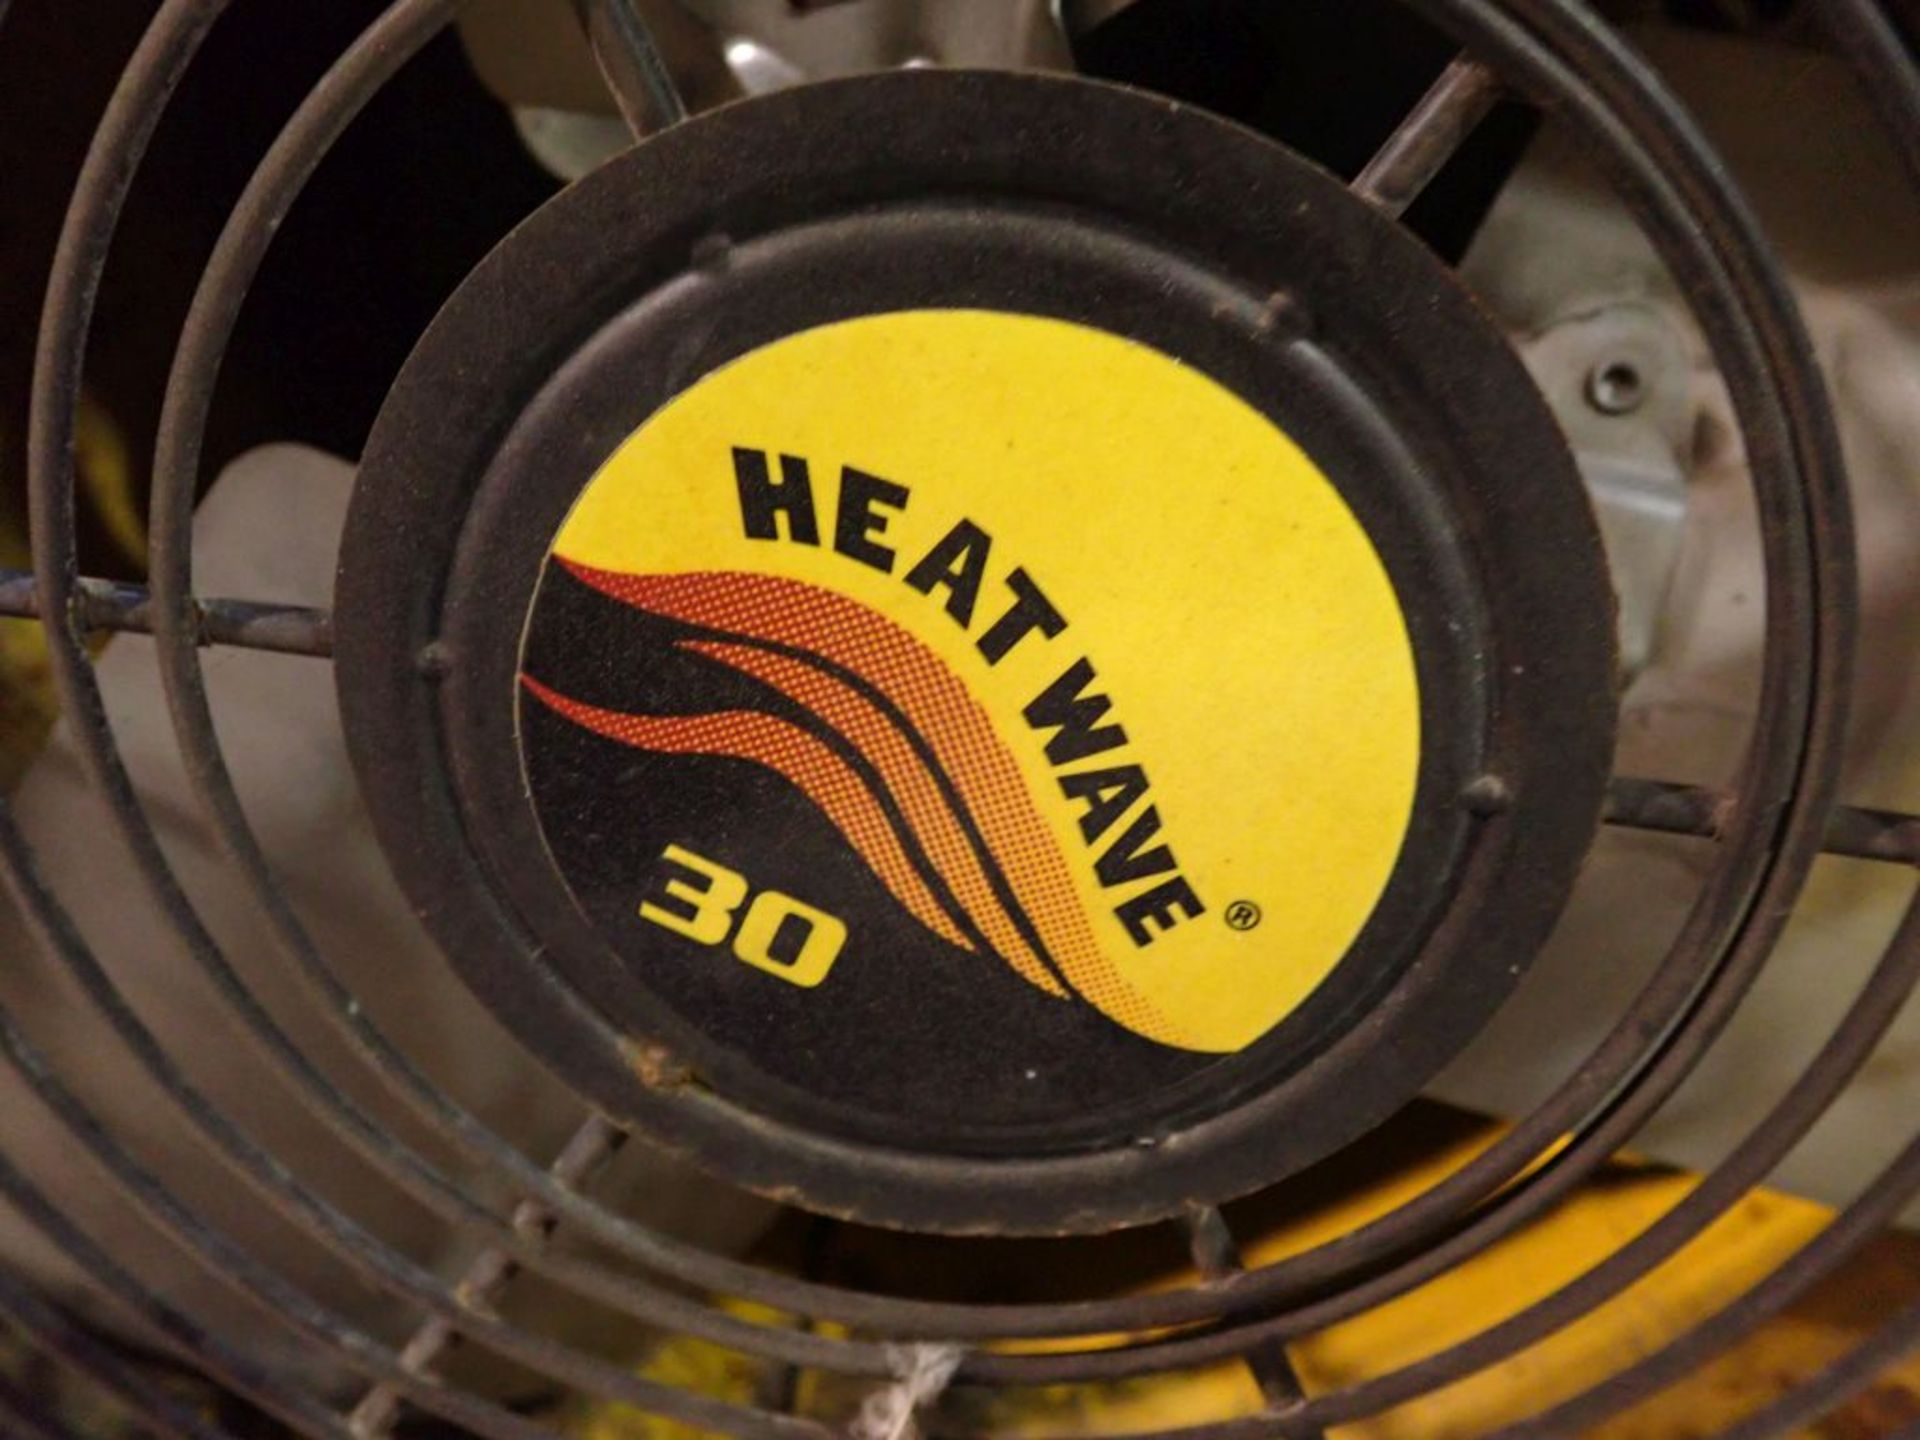 Fostoria Heat Wave Fan 30 | Model No. FES-3048-38 - Image 4 of 9